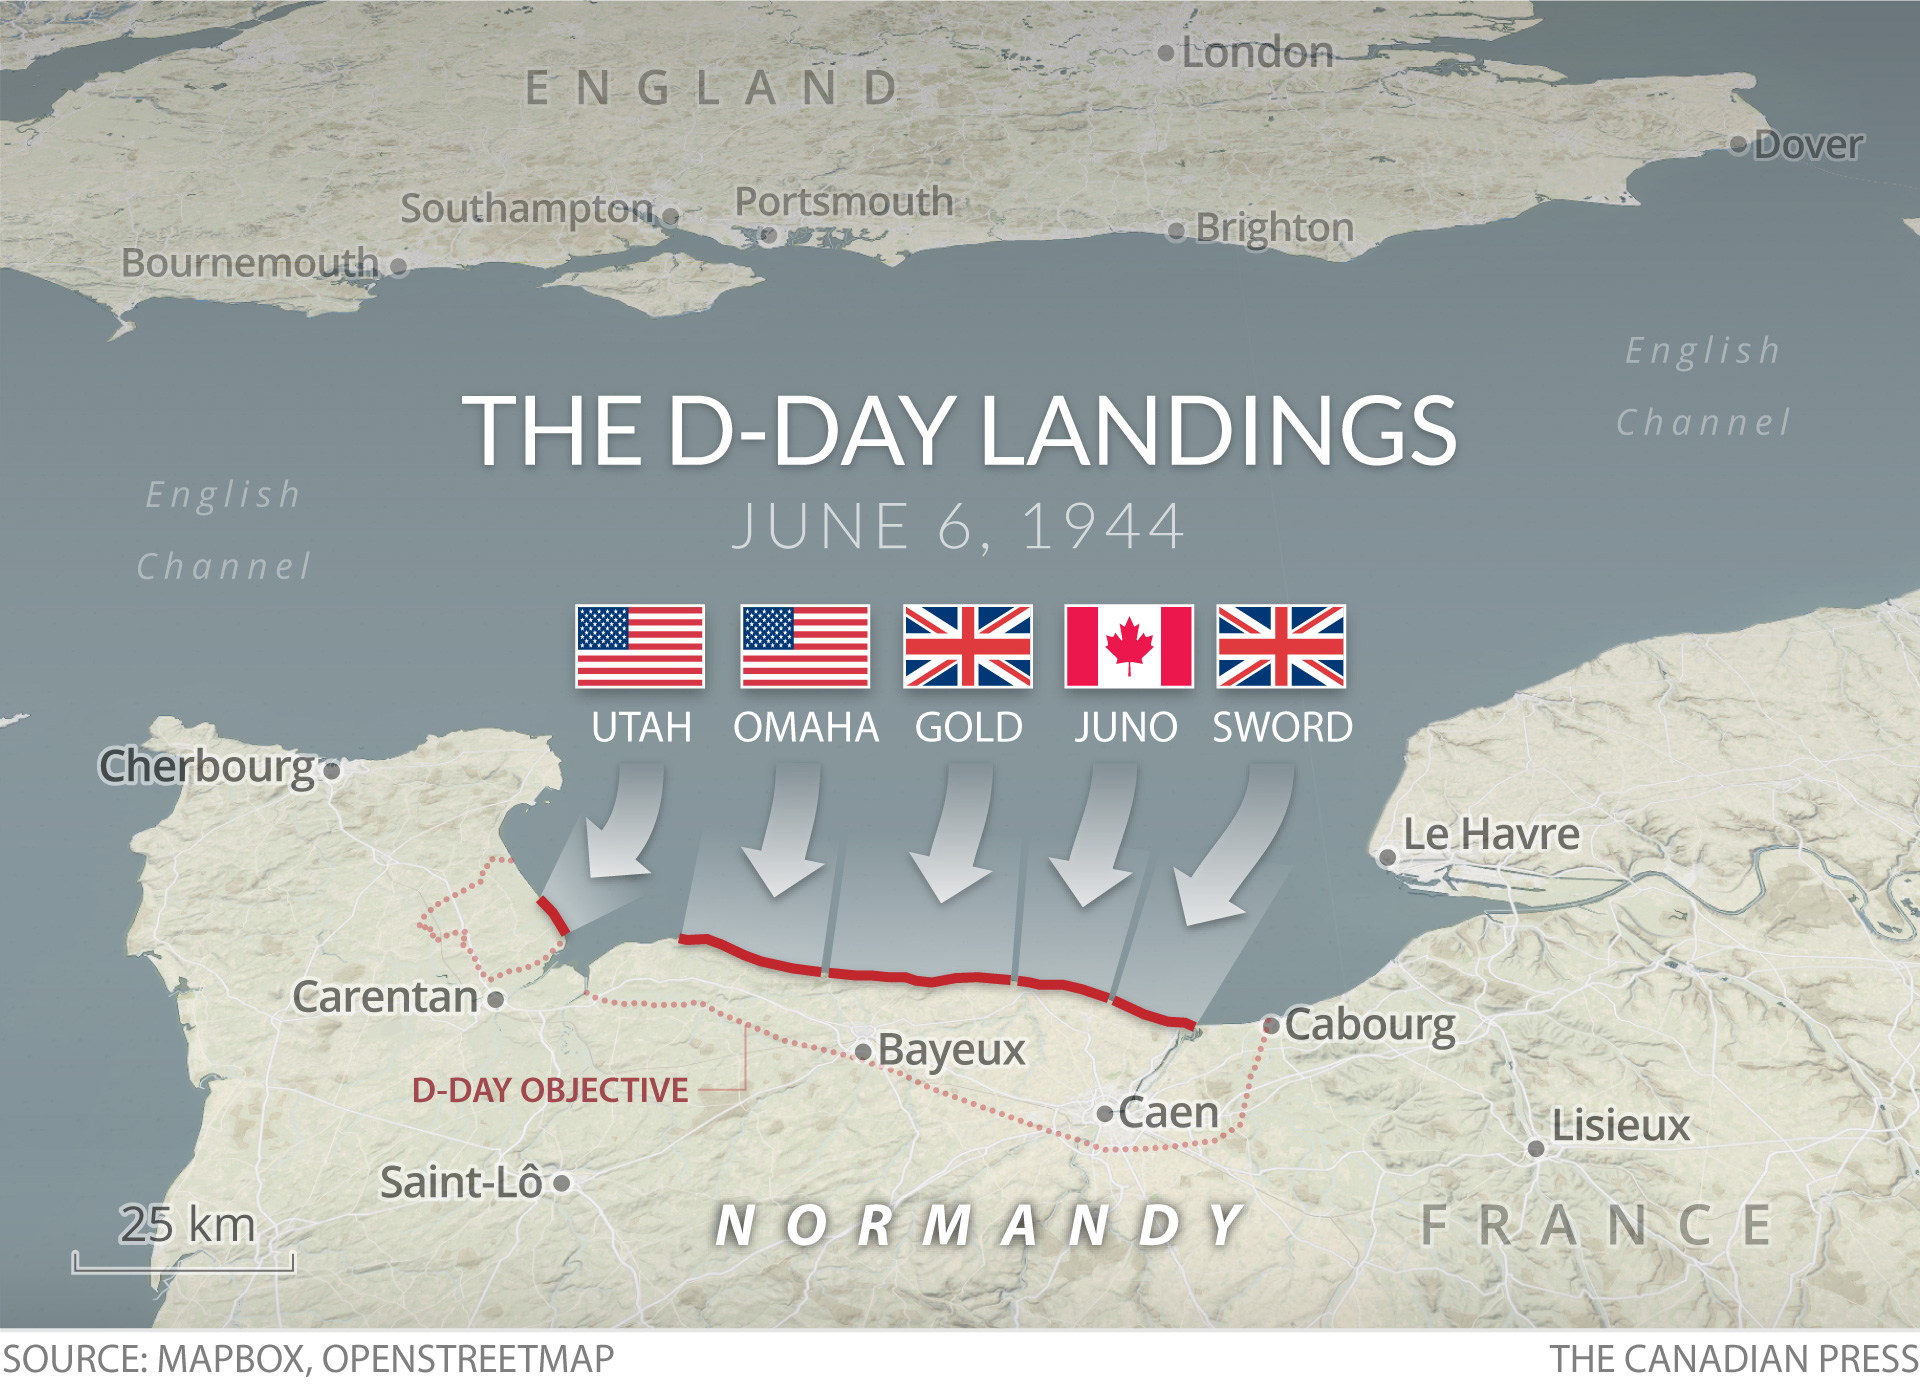 THE D-DAY LANDINGS